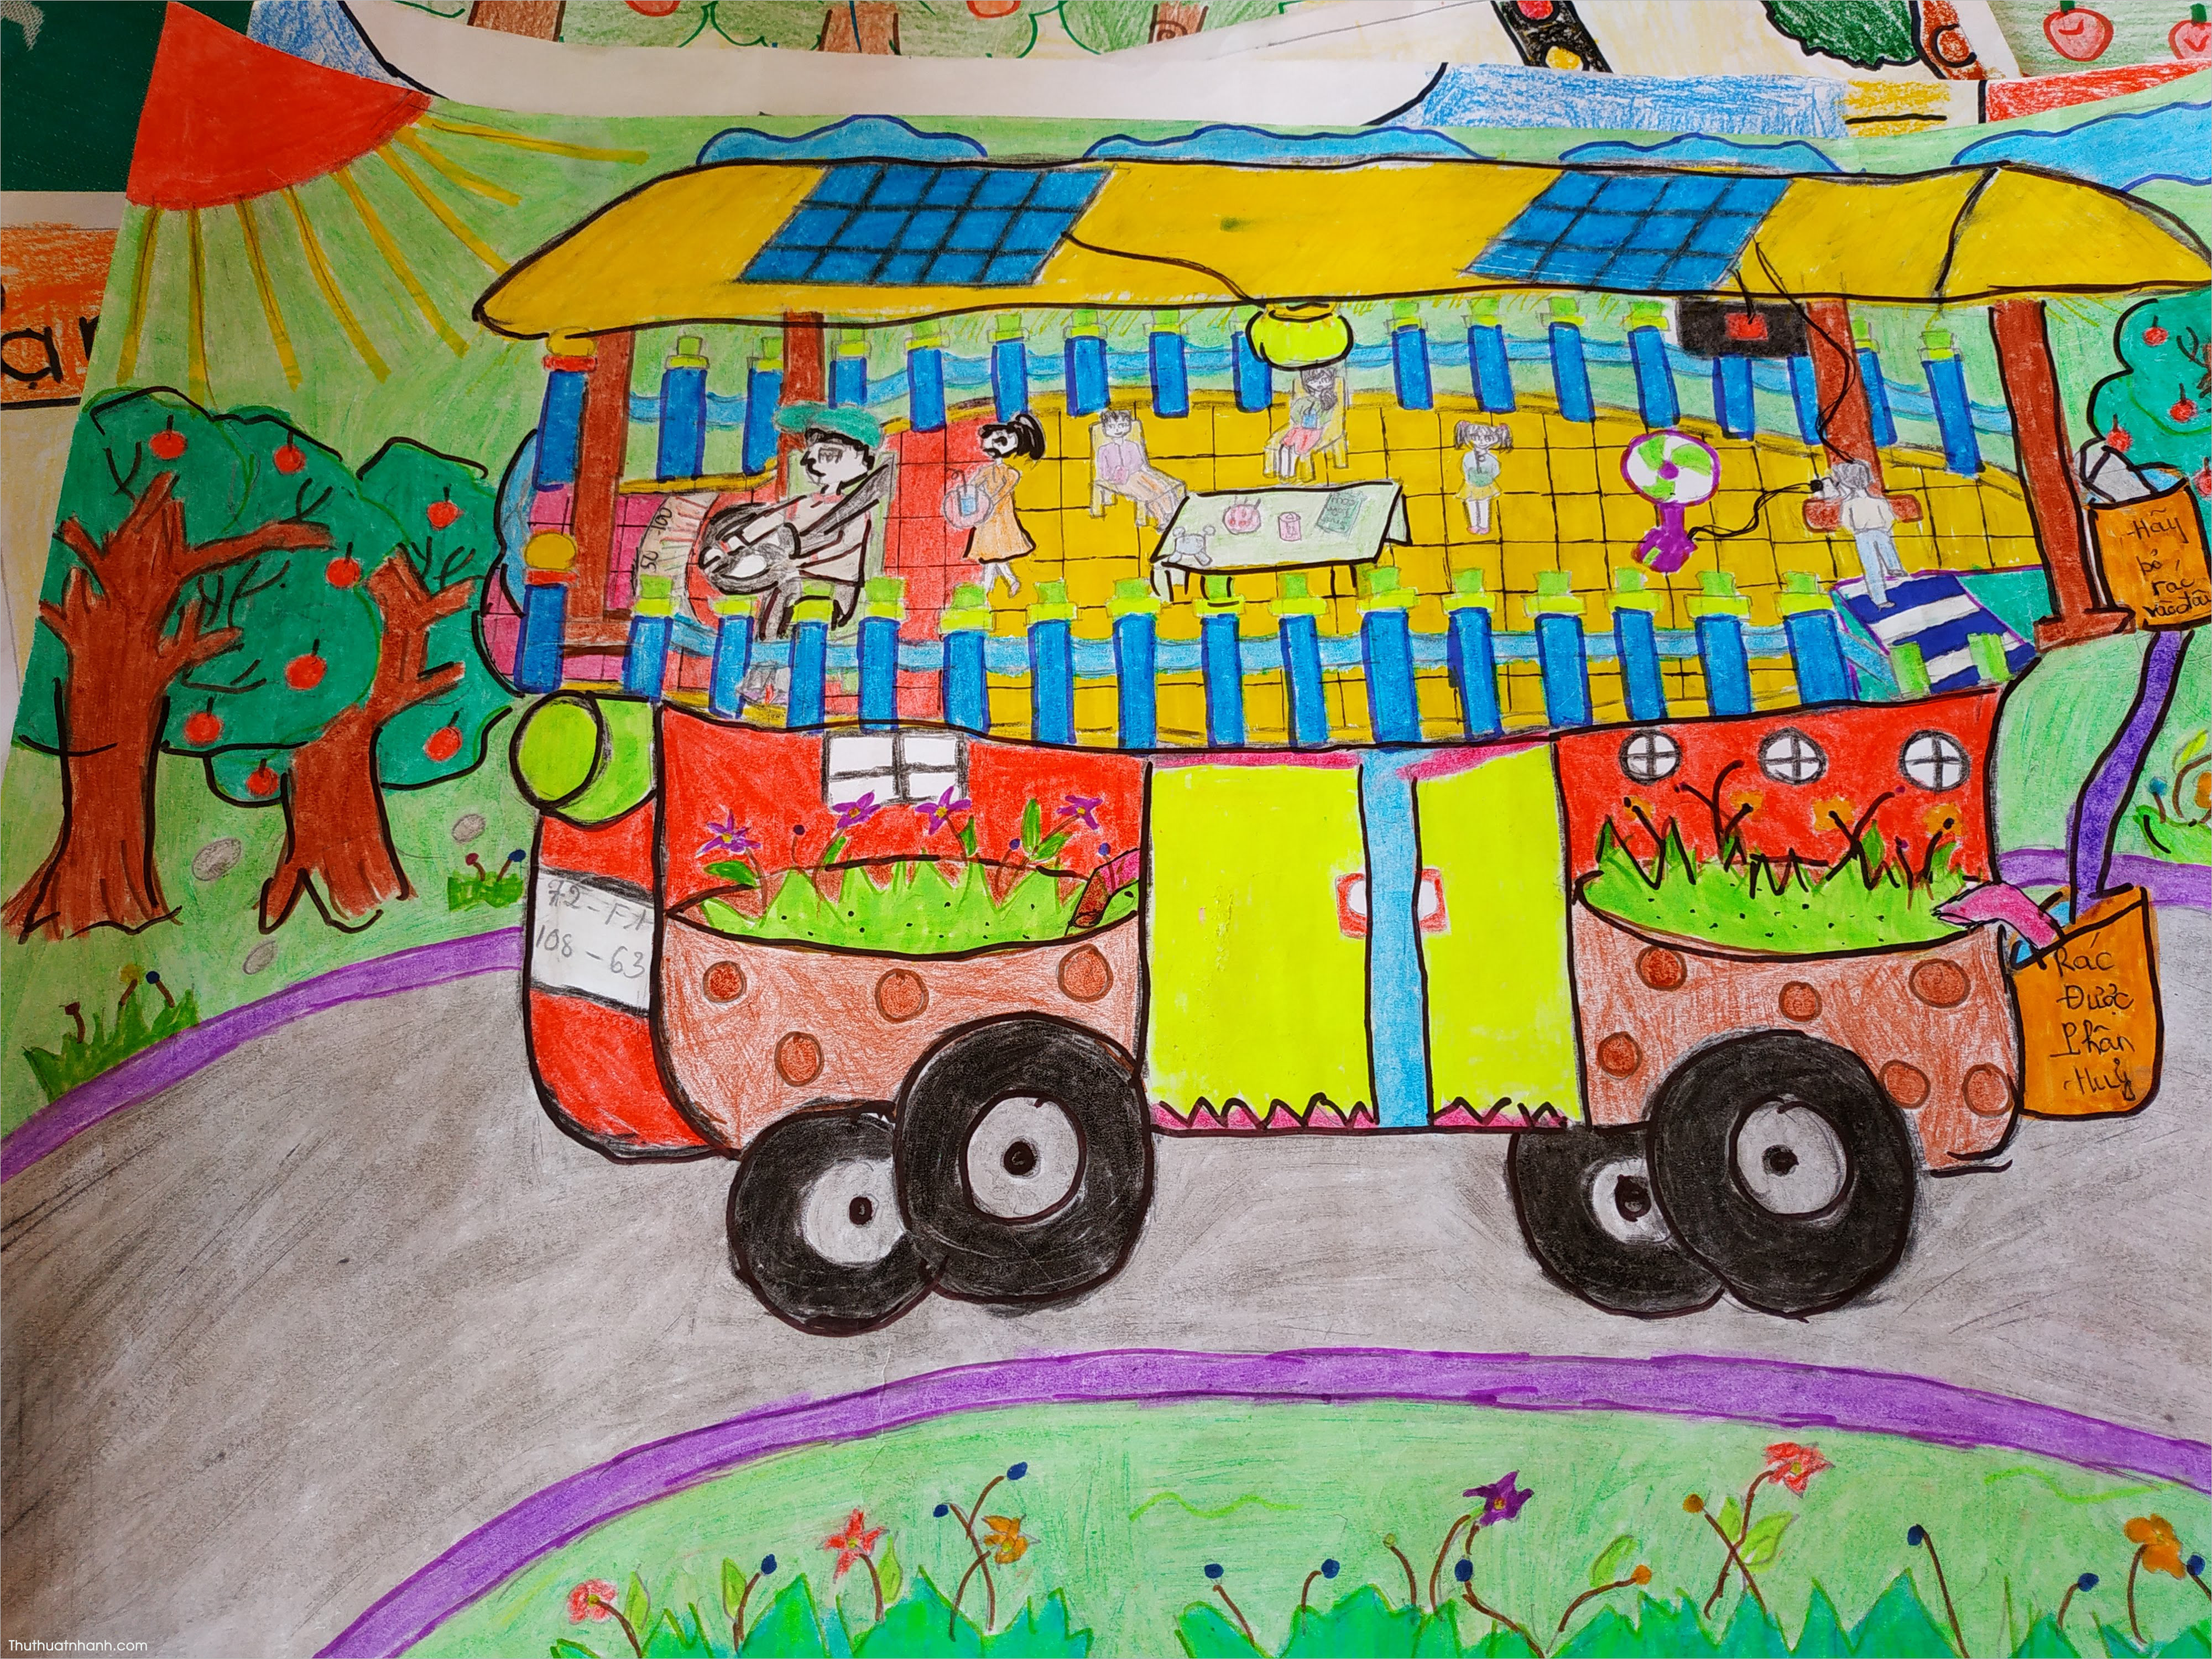 Hướng dẫn vẽ chiếc Ô Tô mơ ước  Draw a dream car  KC art  YouTube